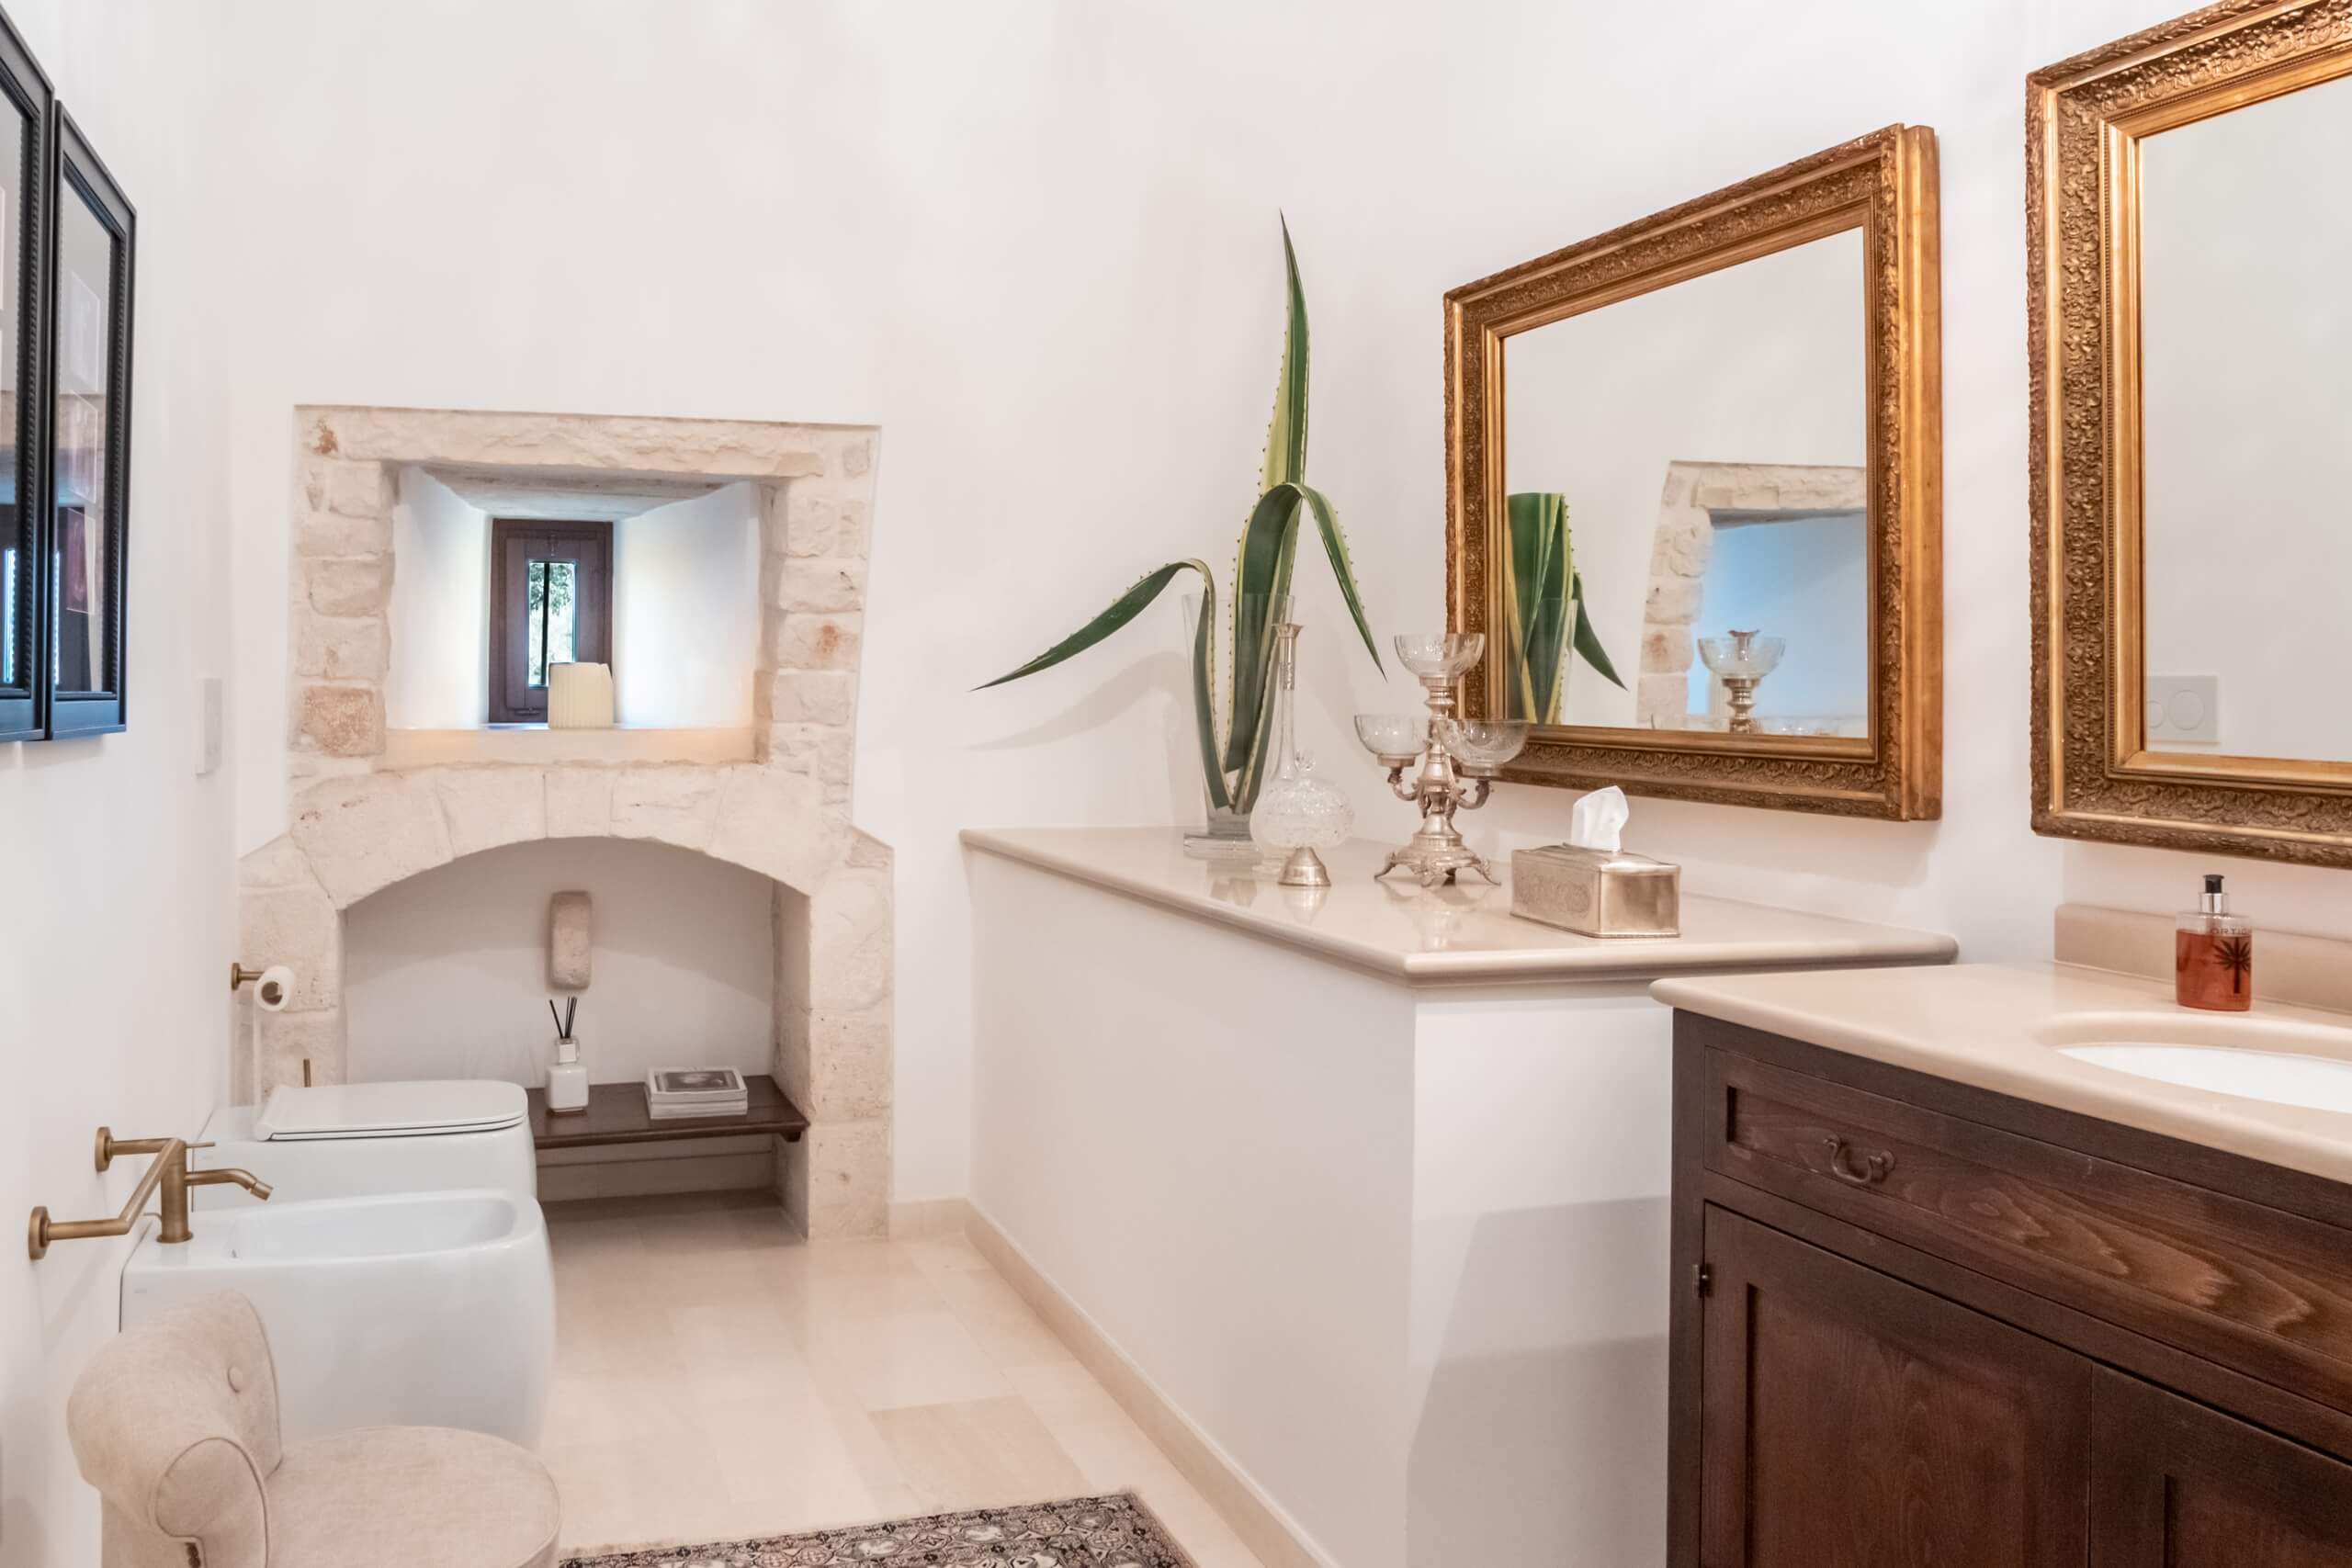 Double rooms with private bathroom in historic luxury farmhouse in Puglia | Masseria della Croce